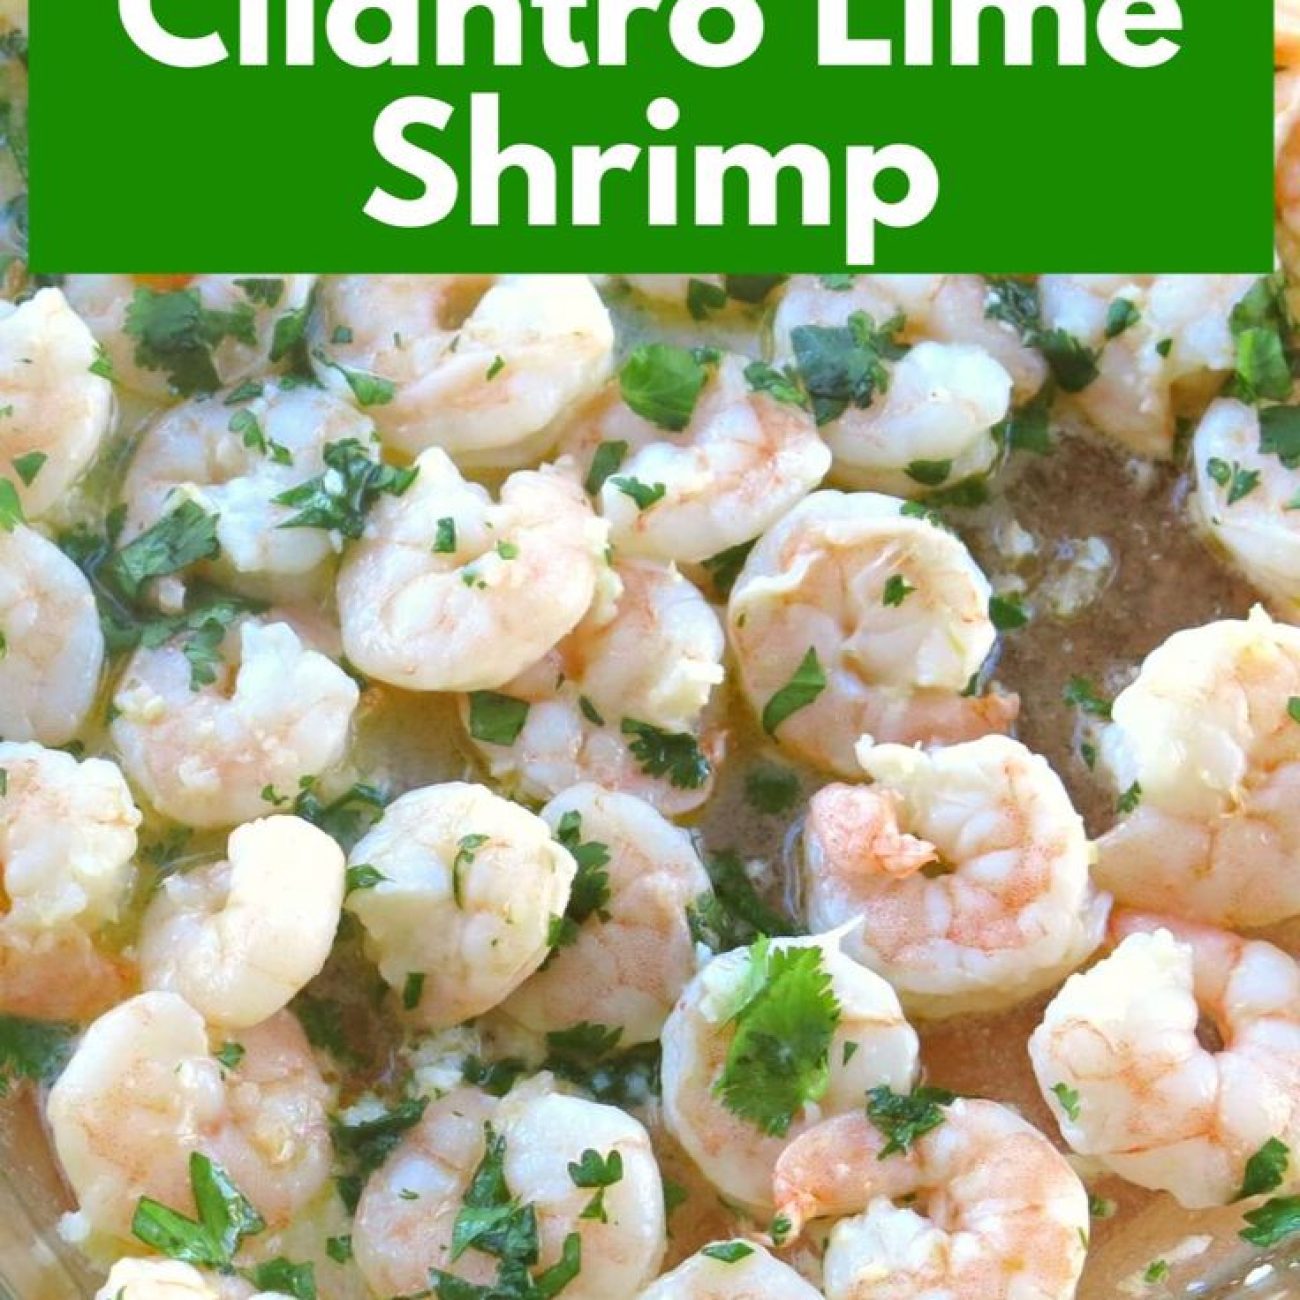 Cilantro Lime Shrimp